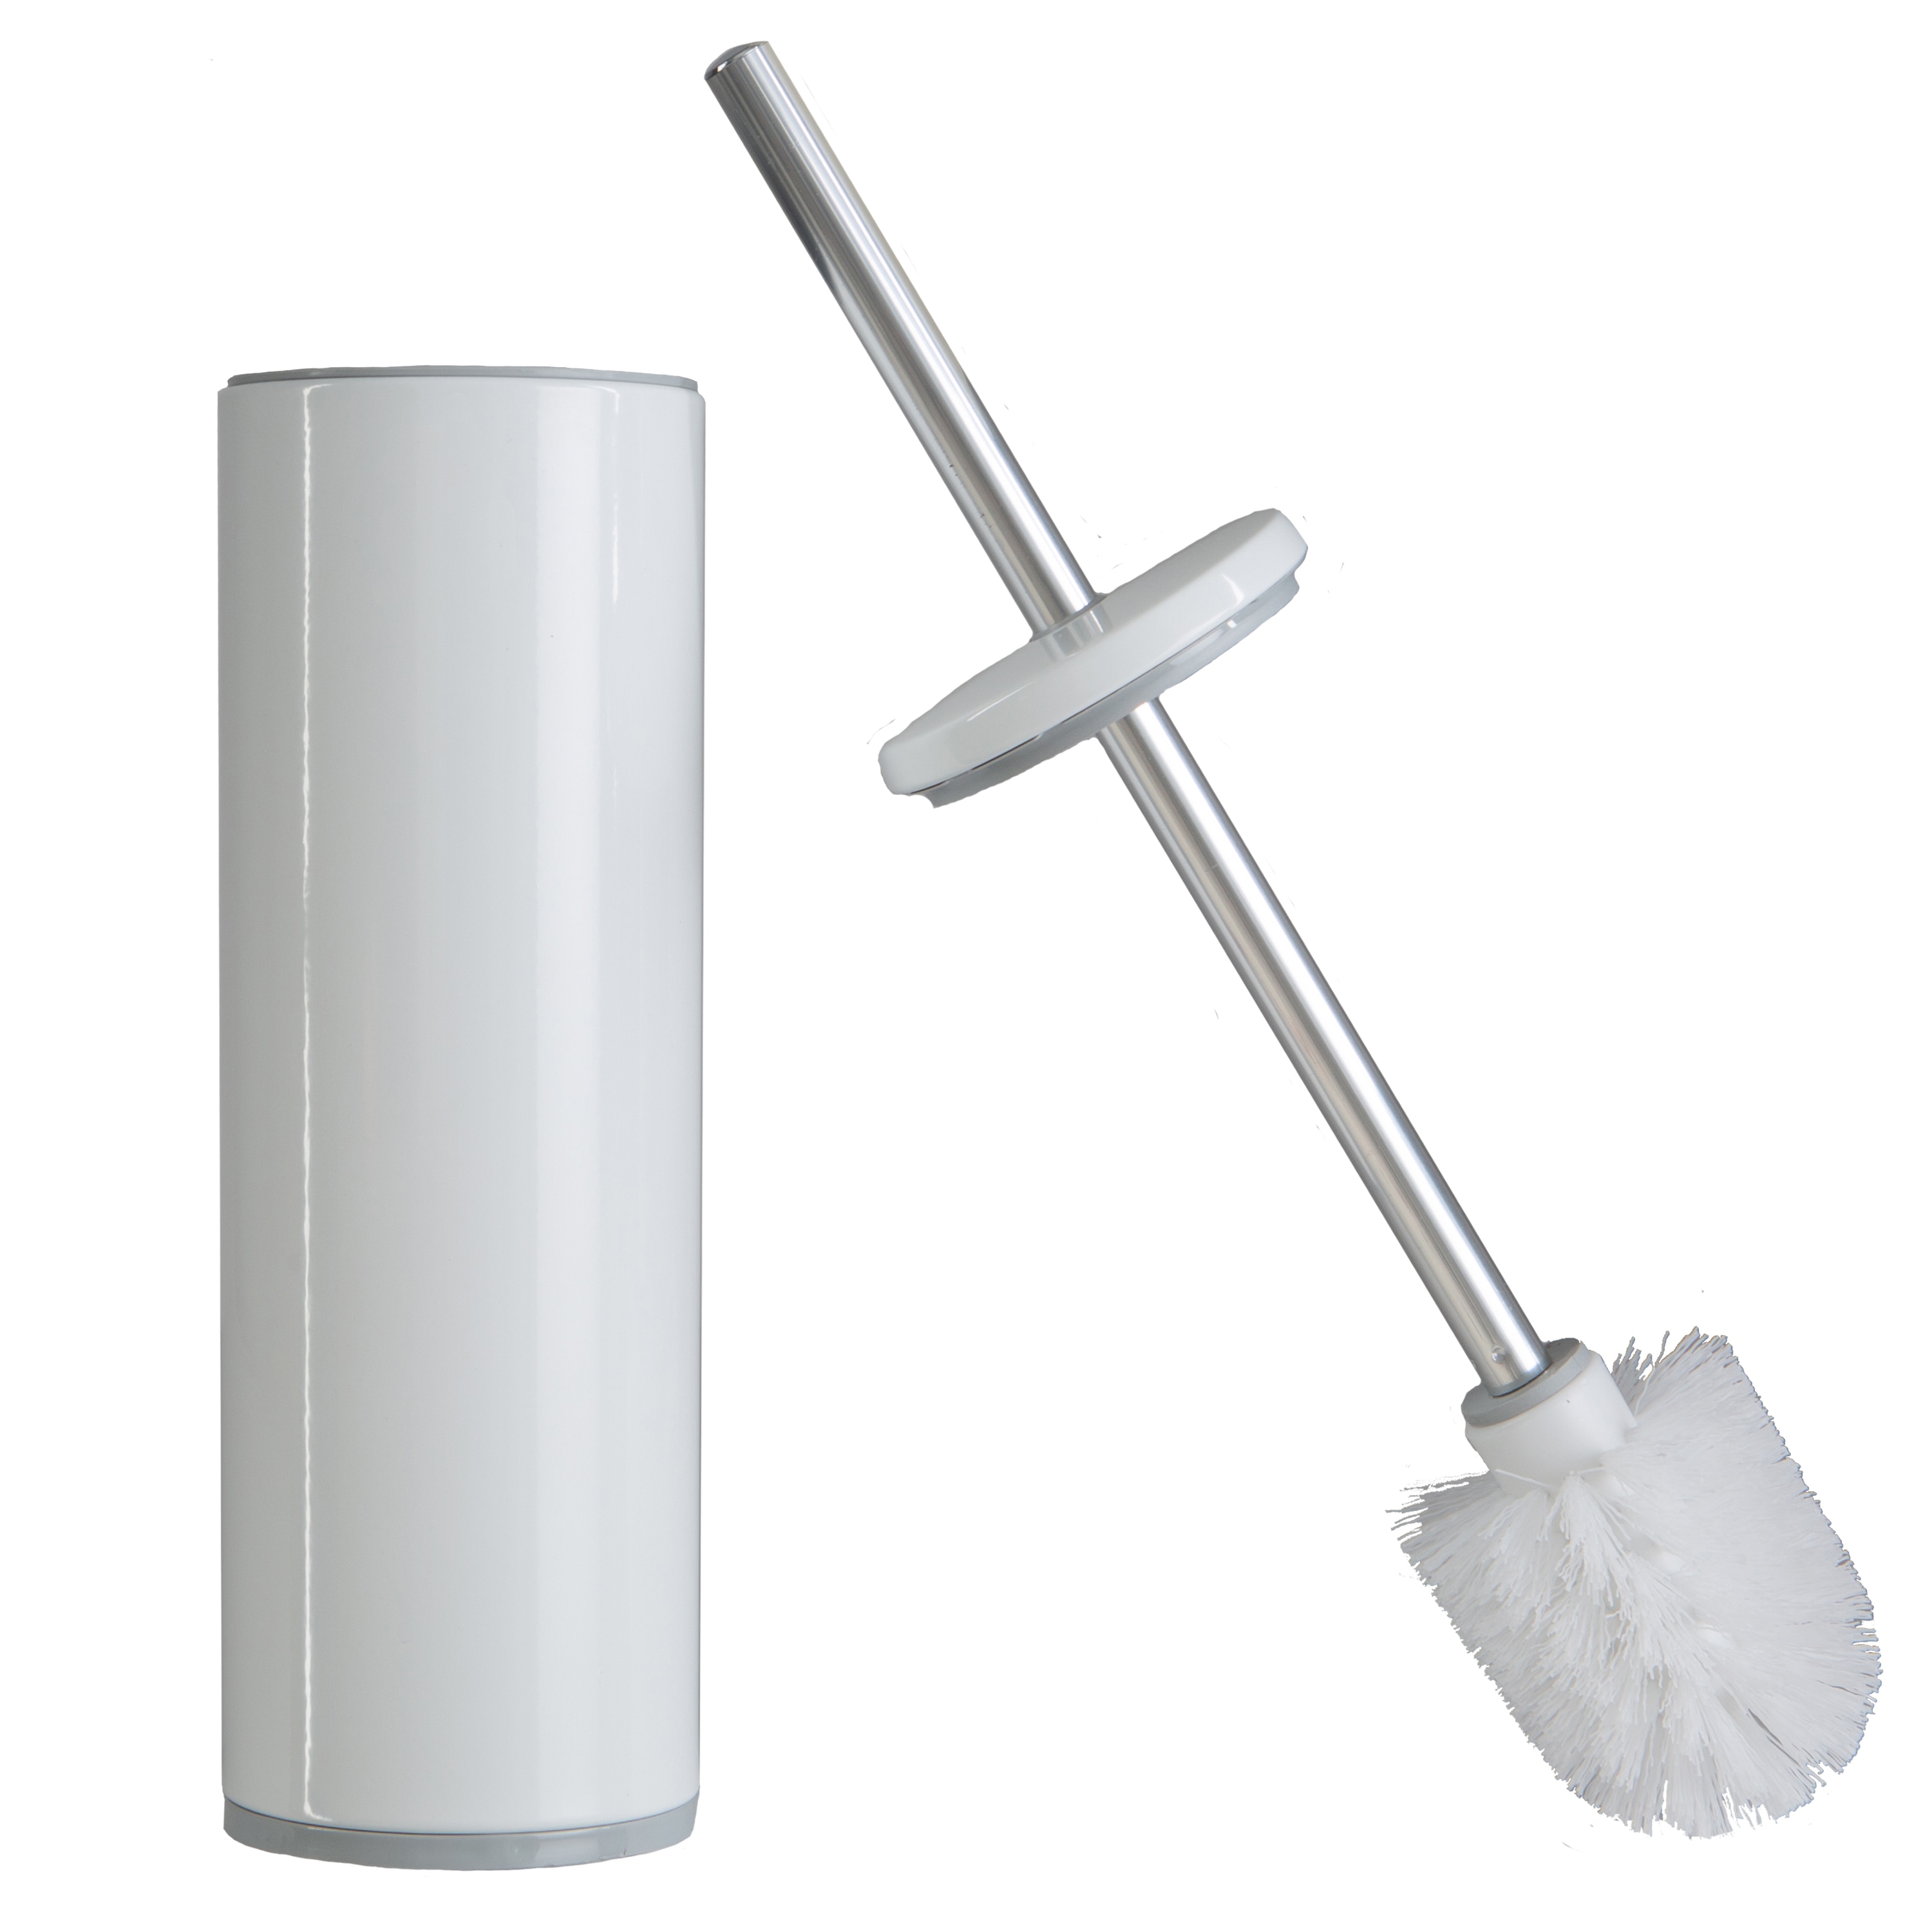 Bath Bliss Toilet Brush Holder in Stainless Steel, Stainless Steel/White